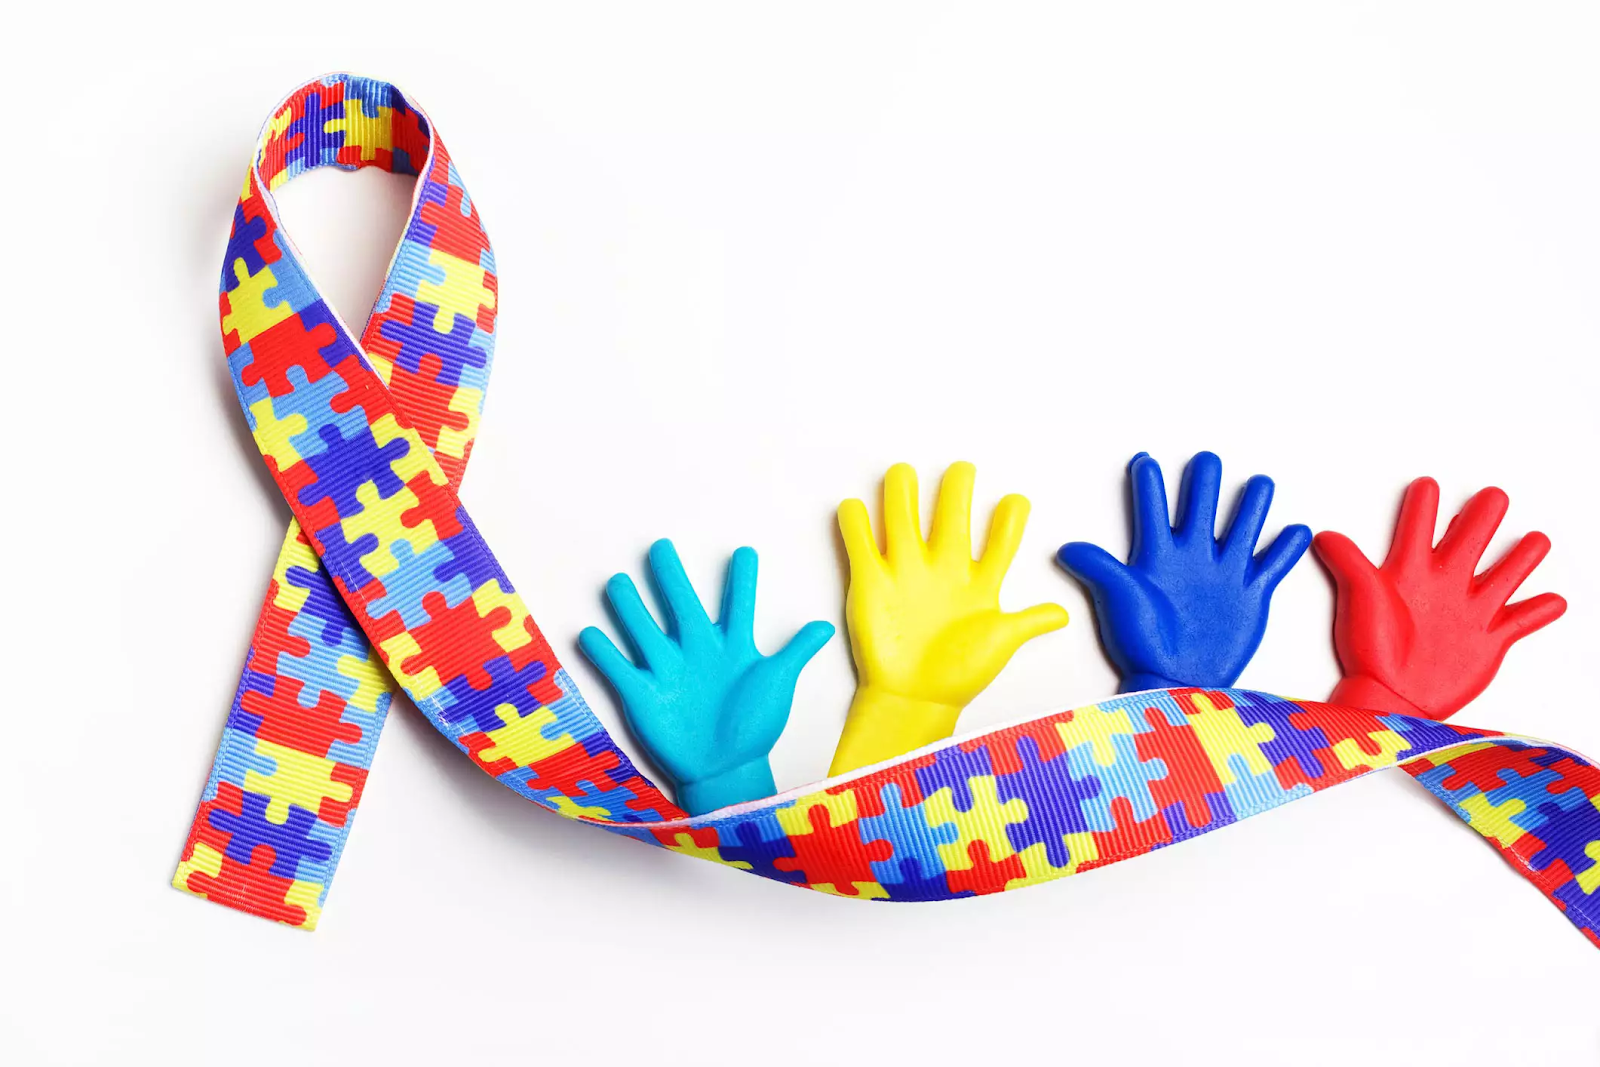 Fonoaudiologia para crianças dentro do espectro do autismo